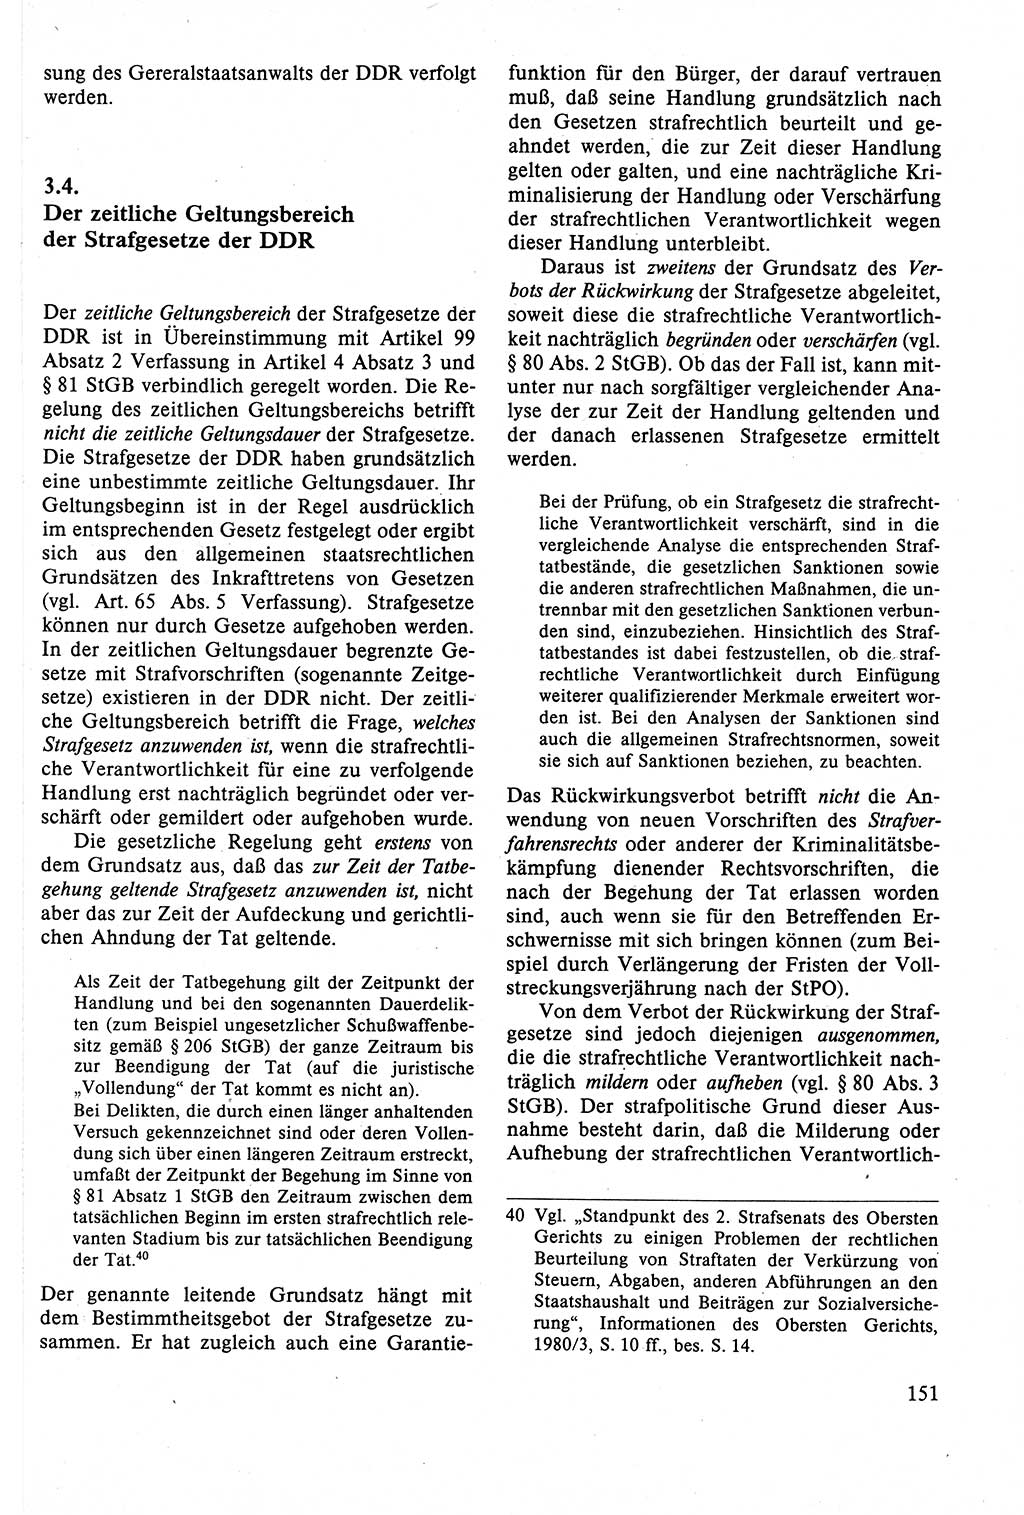 Strafrecht der DDR (Deutsche Demokratische Republik), Lehrbuch 1988, Seite 151 (Strafr. DDR Lb. 1988, S. 151)